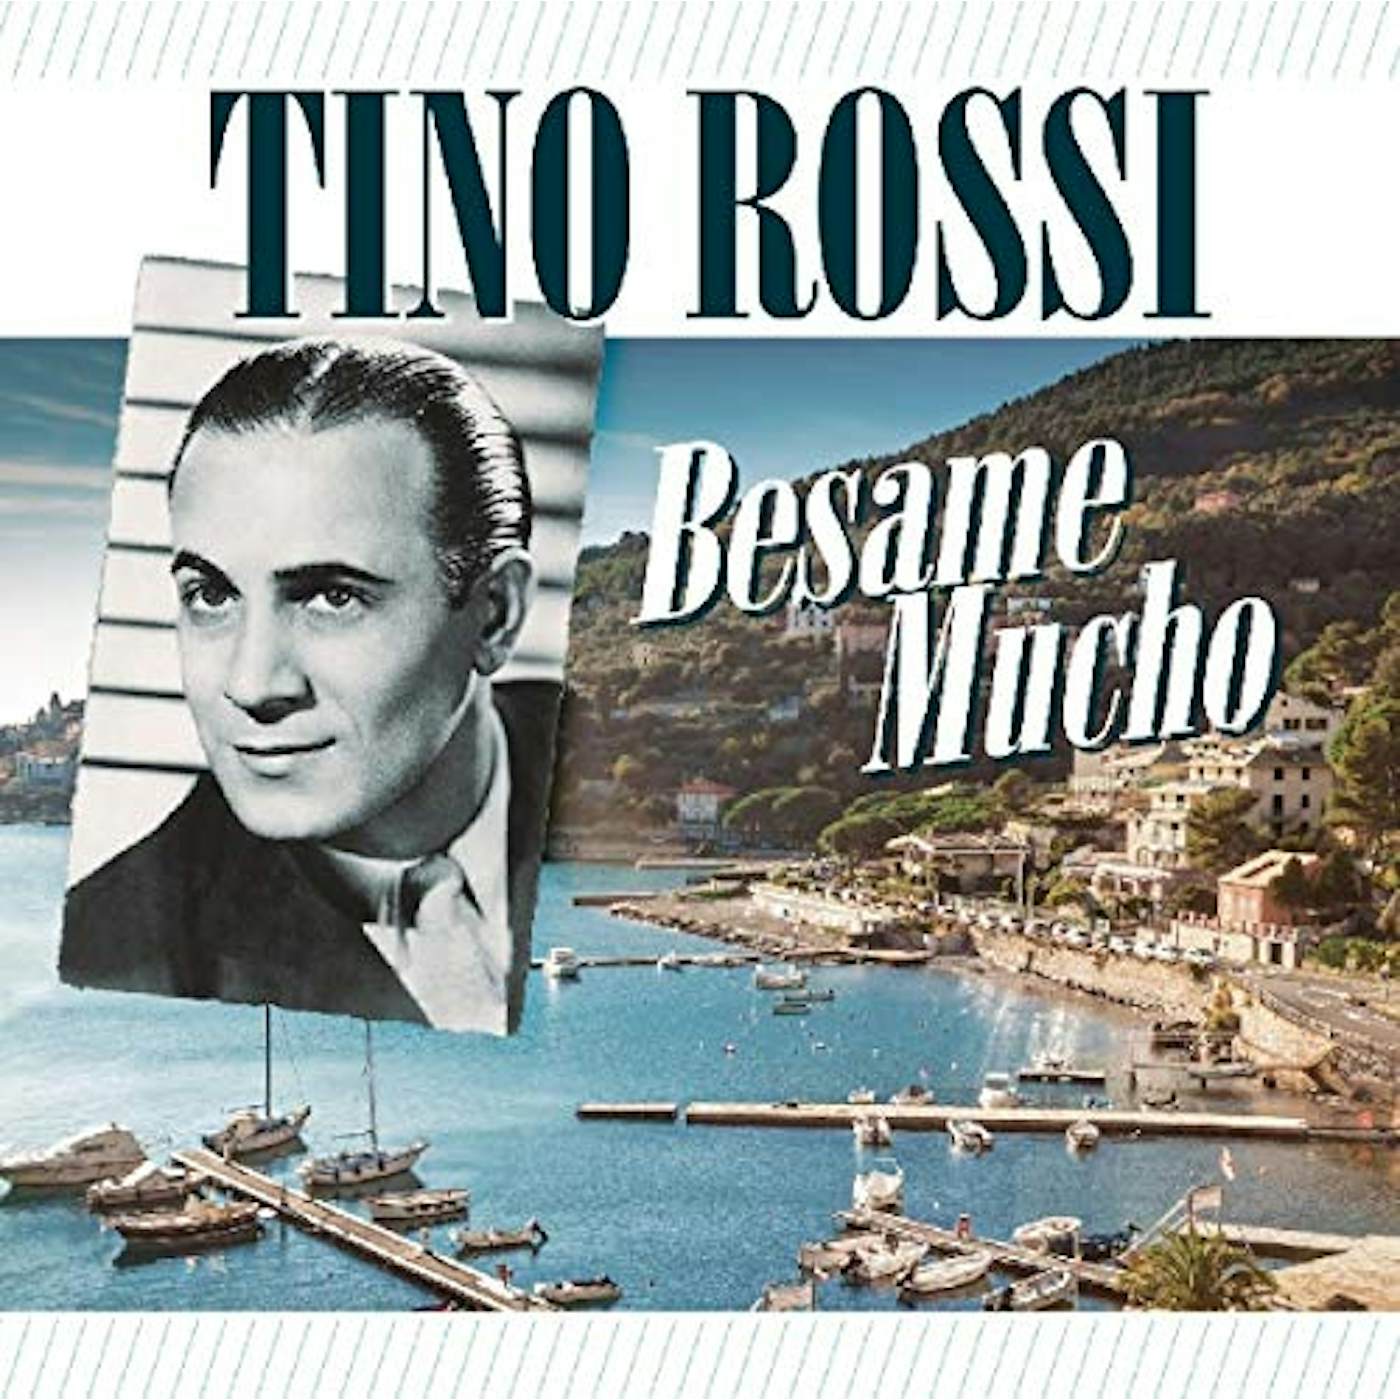 Tino Rossi BESAME MUCHO CD